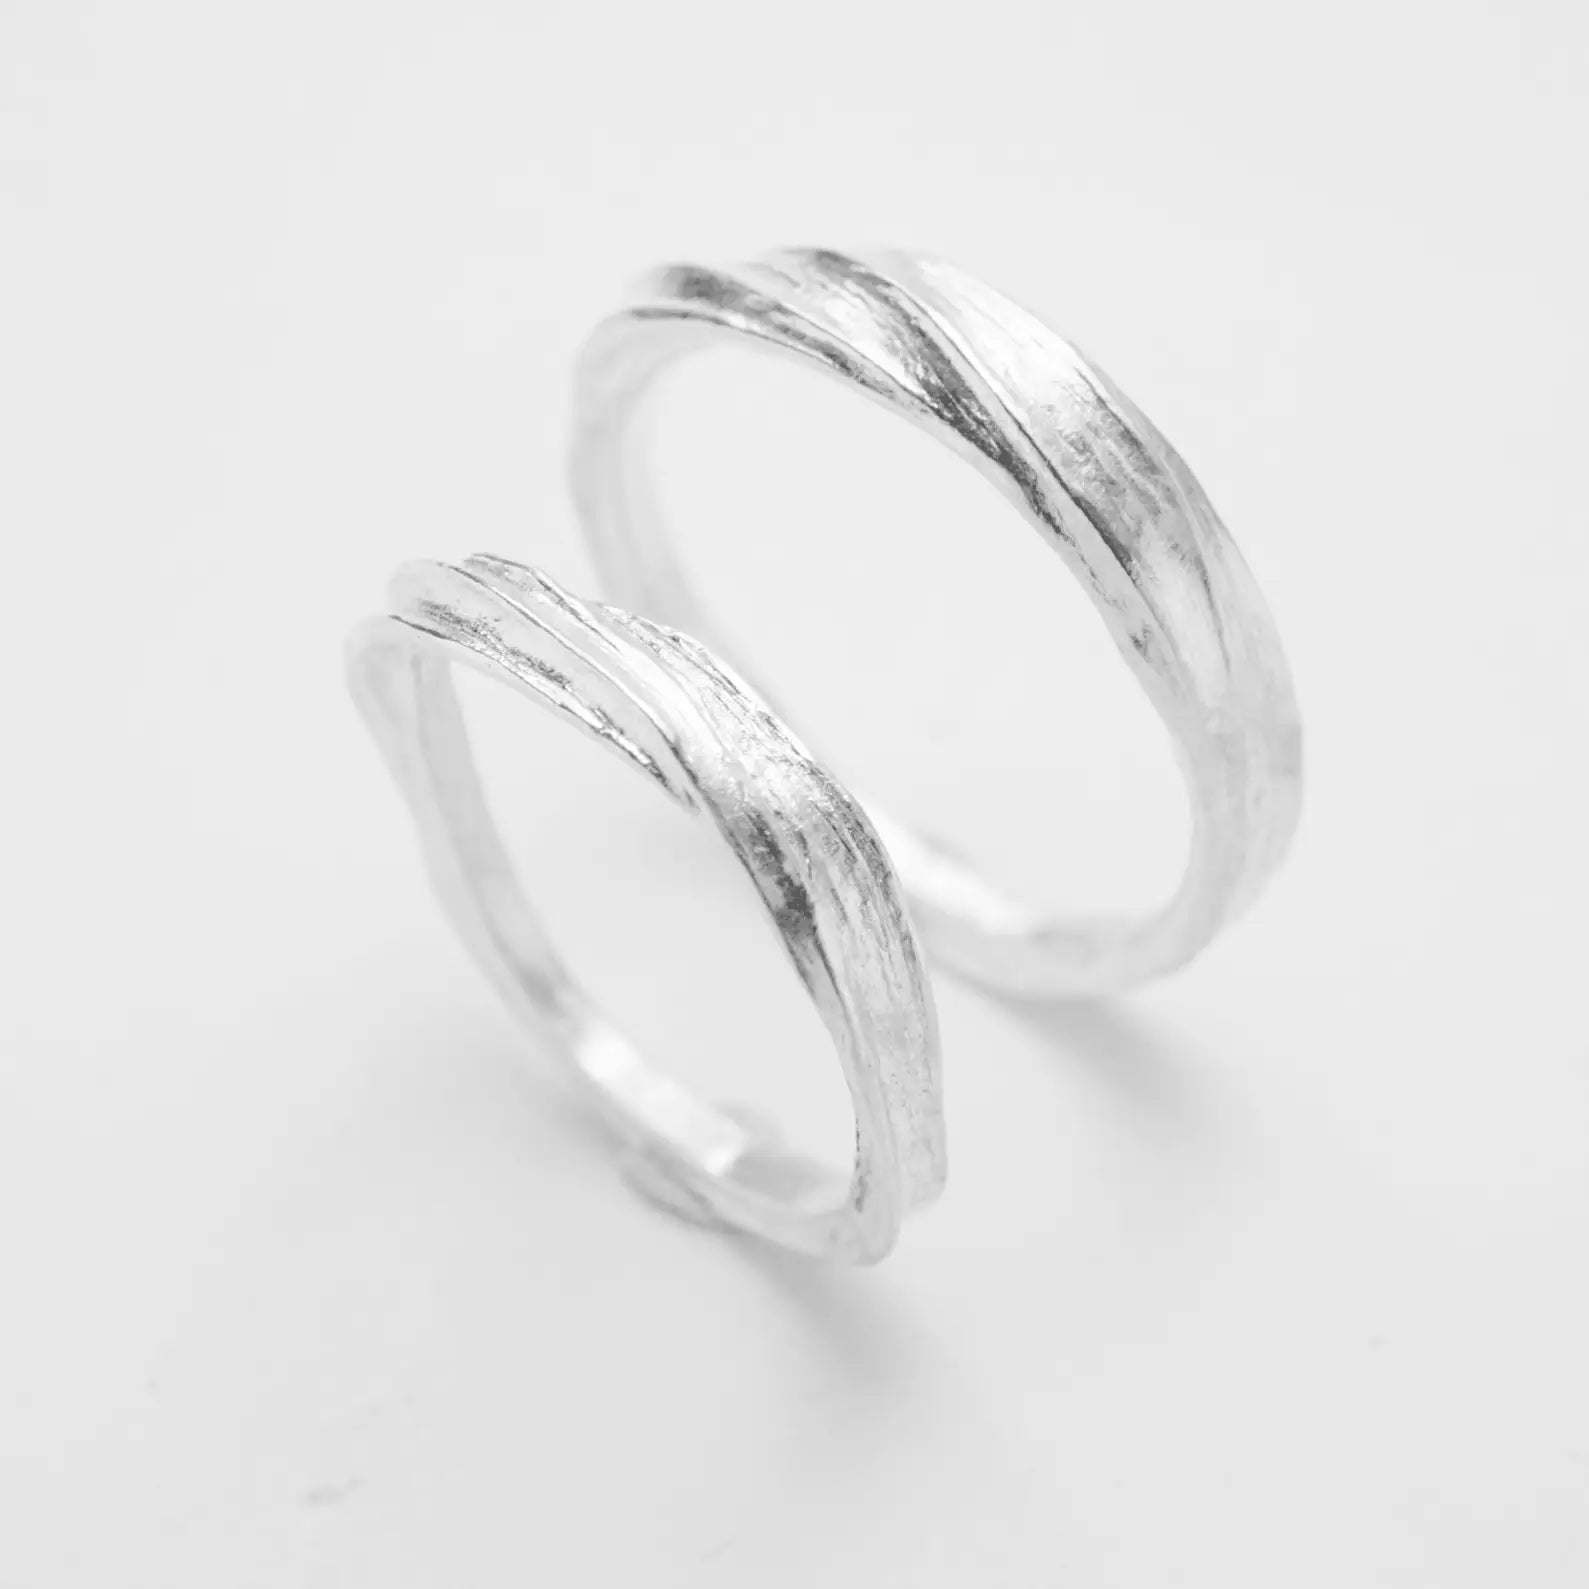 Chia Jewelry訂製婚戒對戒品牌推薦分享，以水為主題的獨特簡約婚戒設計，手工打造你的夢想婚戒